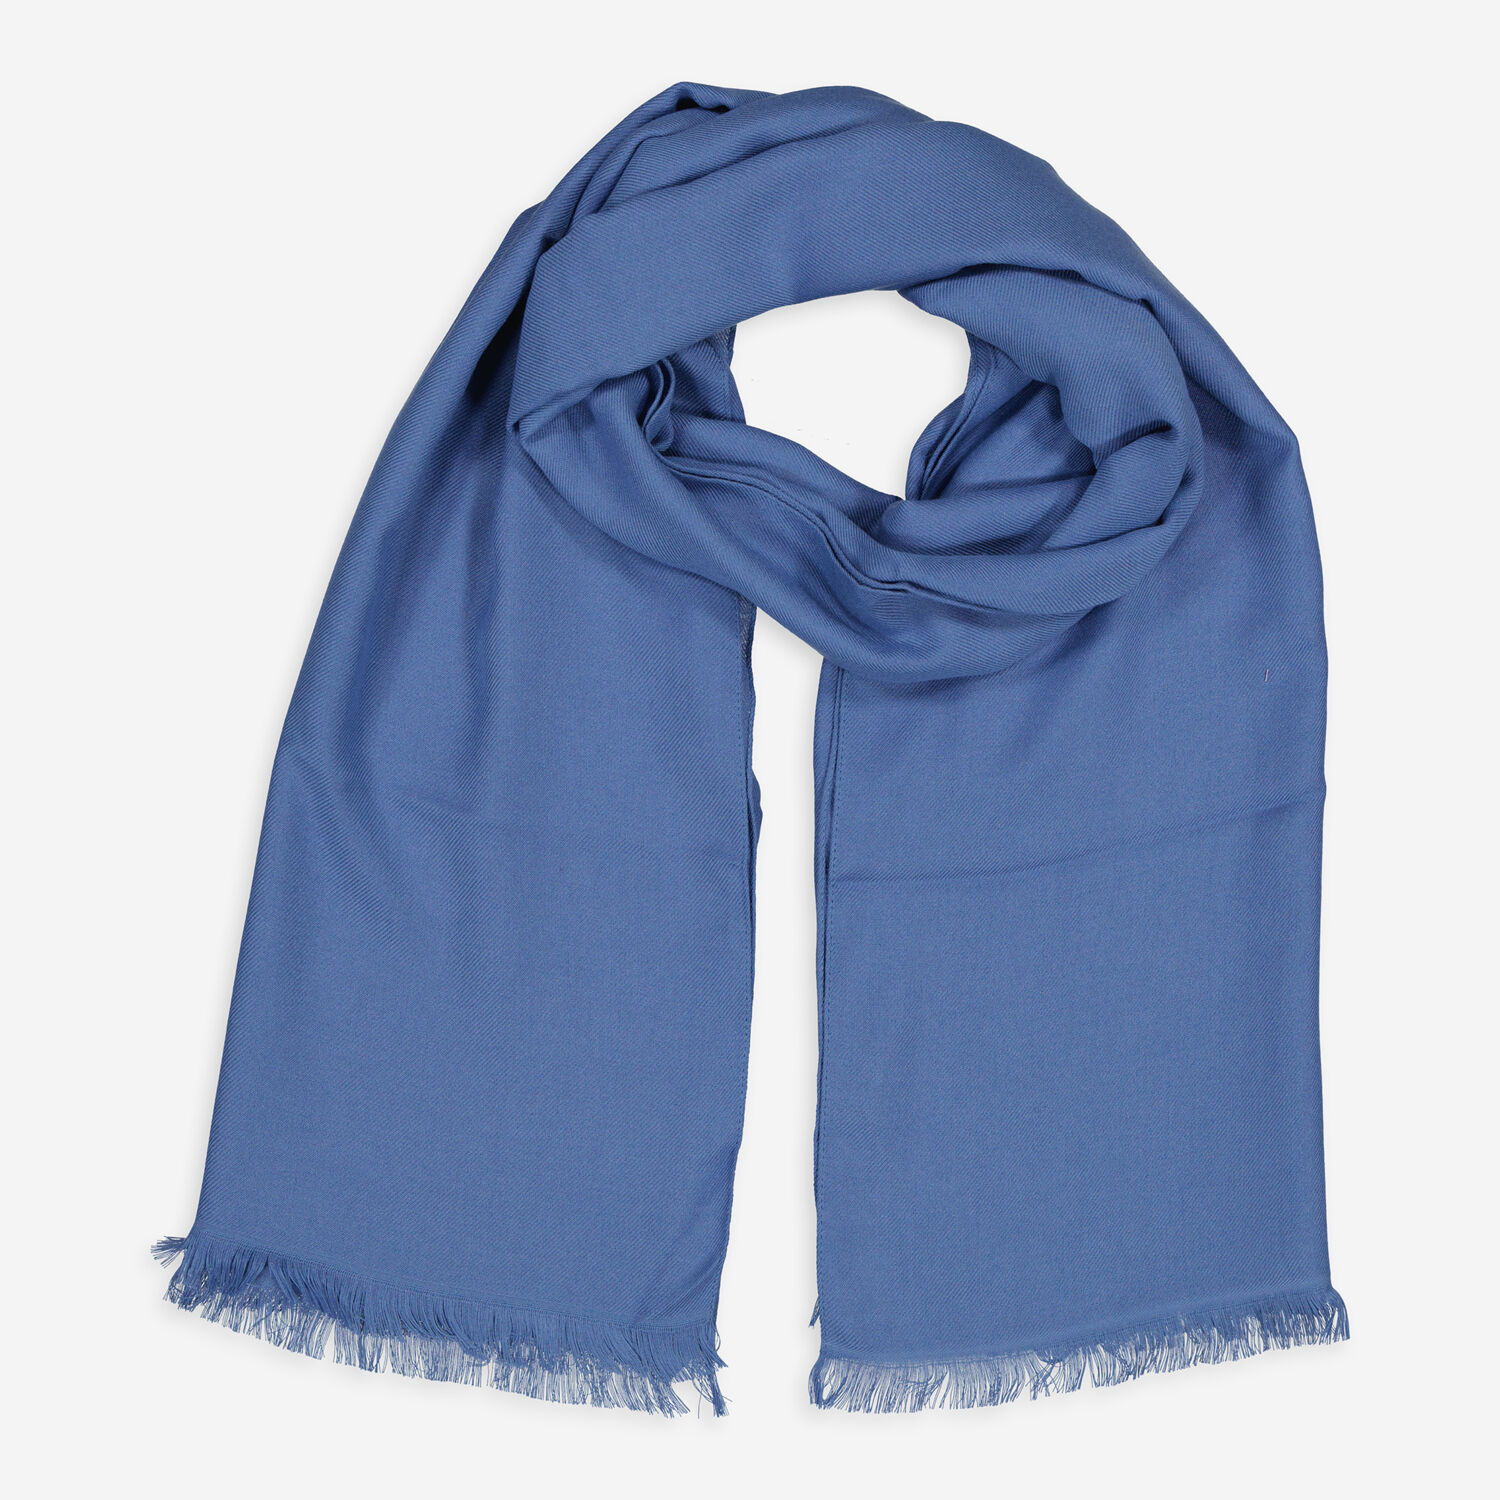 Темно-синий шарф с бахромой Galitzine шарф с бахромой белый синий